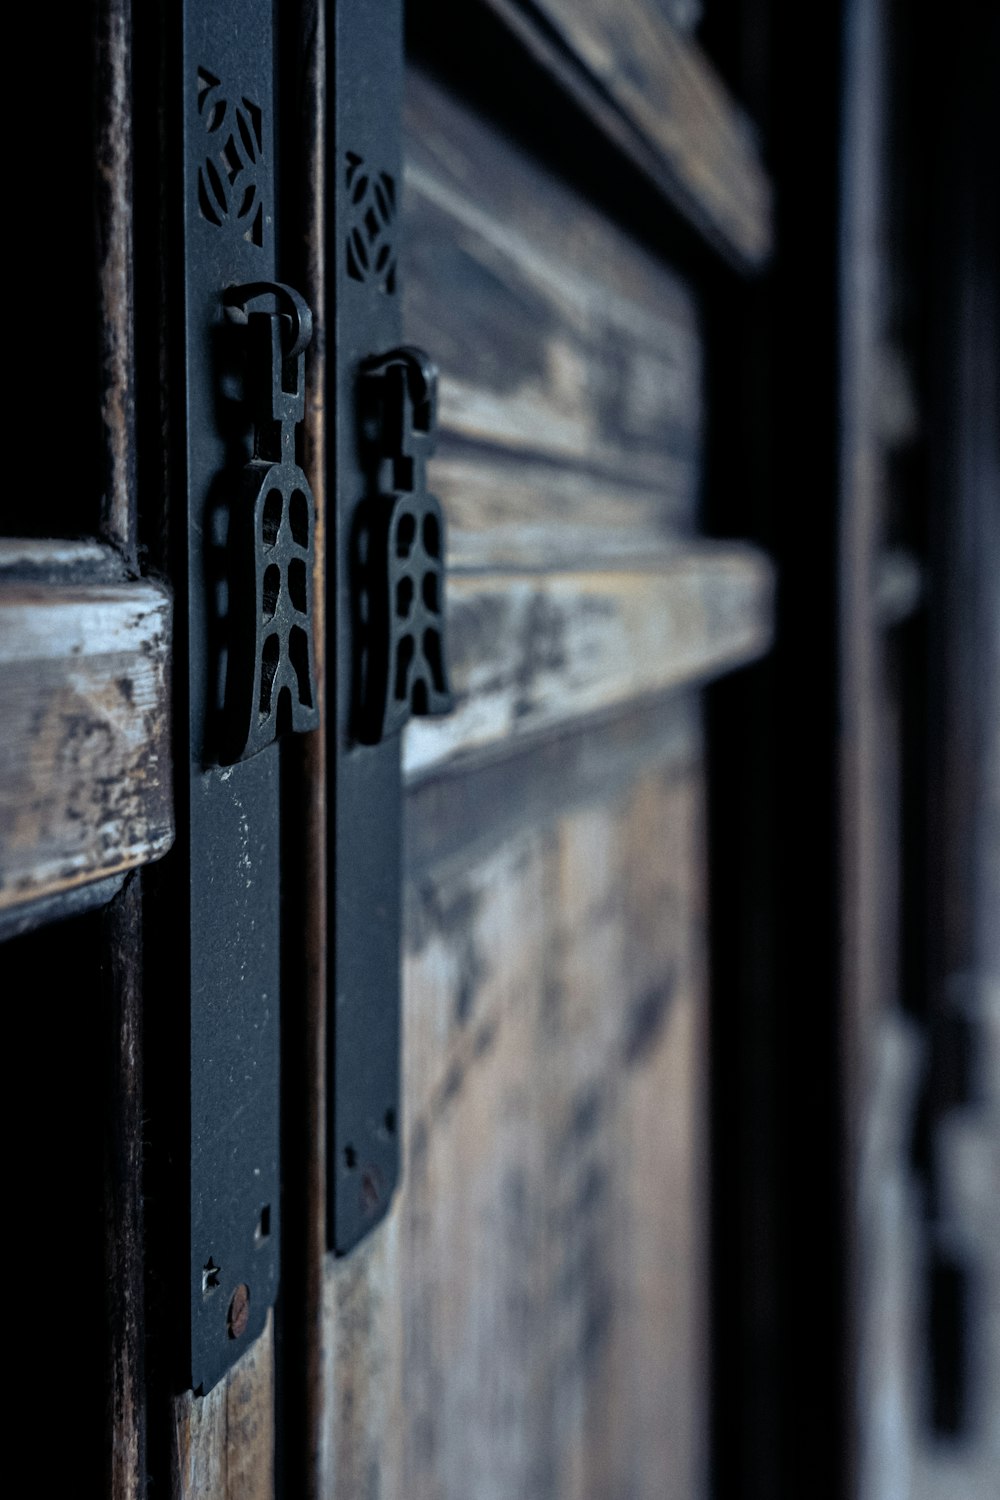 a close up of a door handle on a wooden door